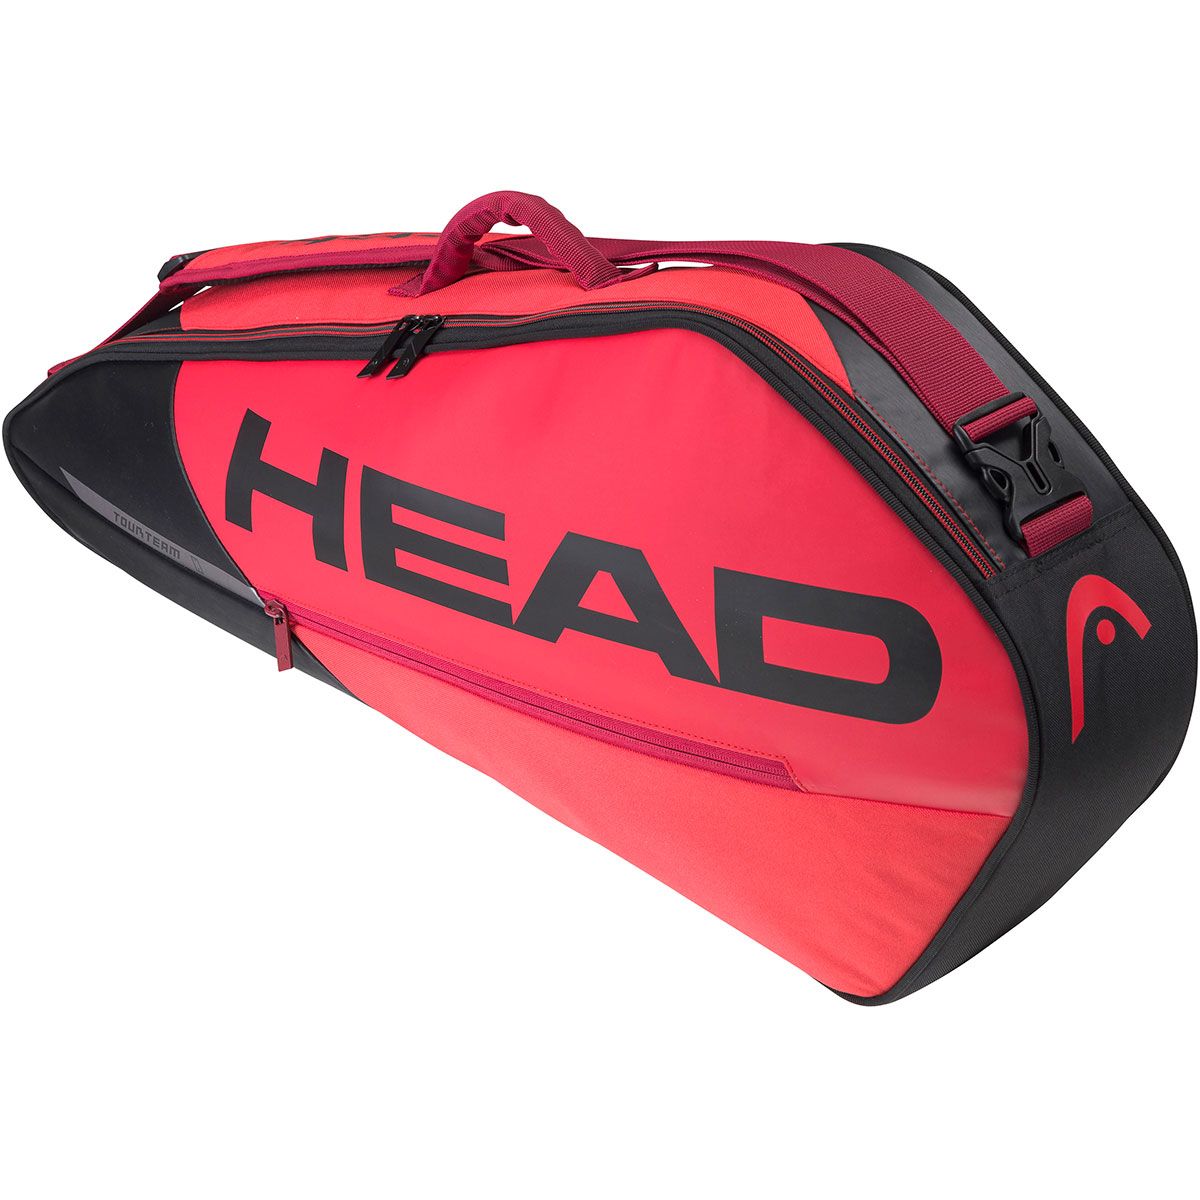 Head Tour Team 3 racquet racket tennis bag Authorized Dealer Fluorescent Red 